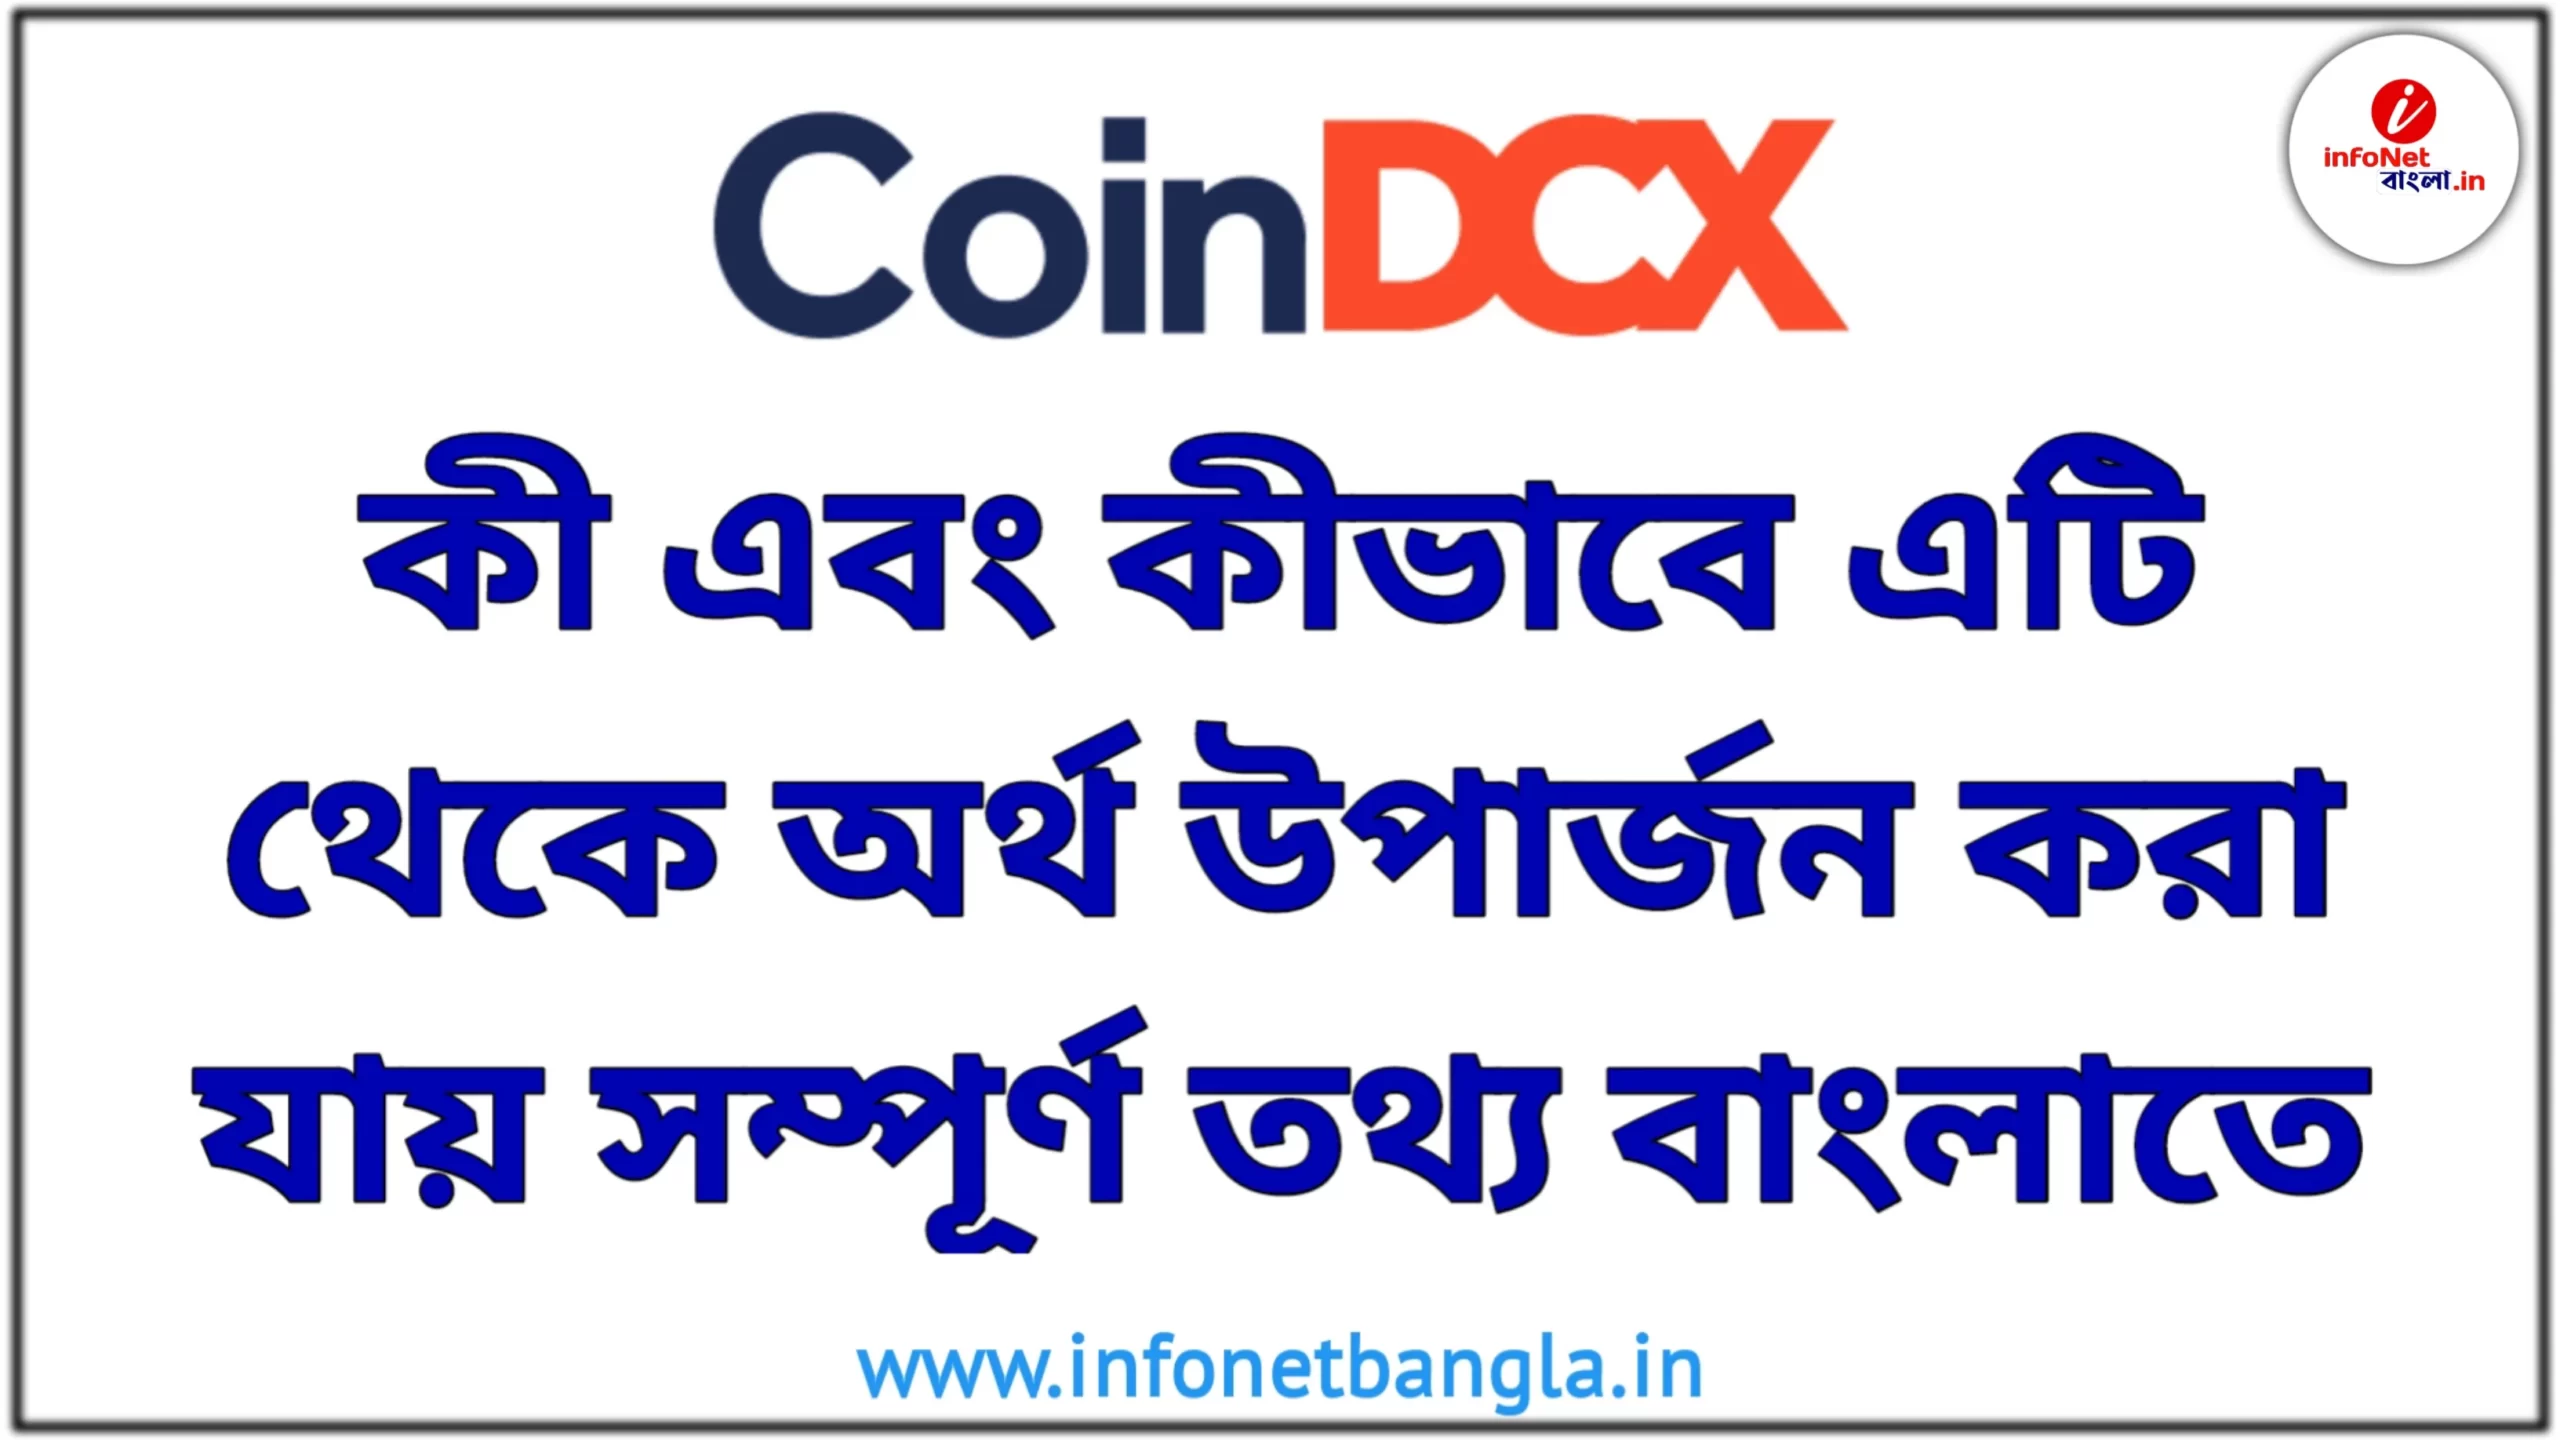 CoinDCX App